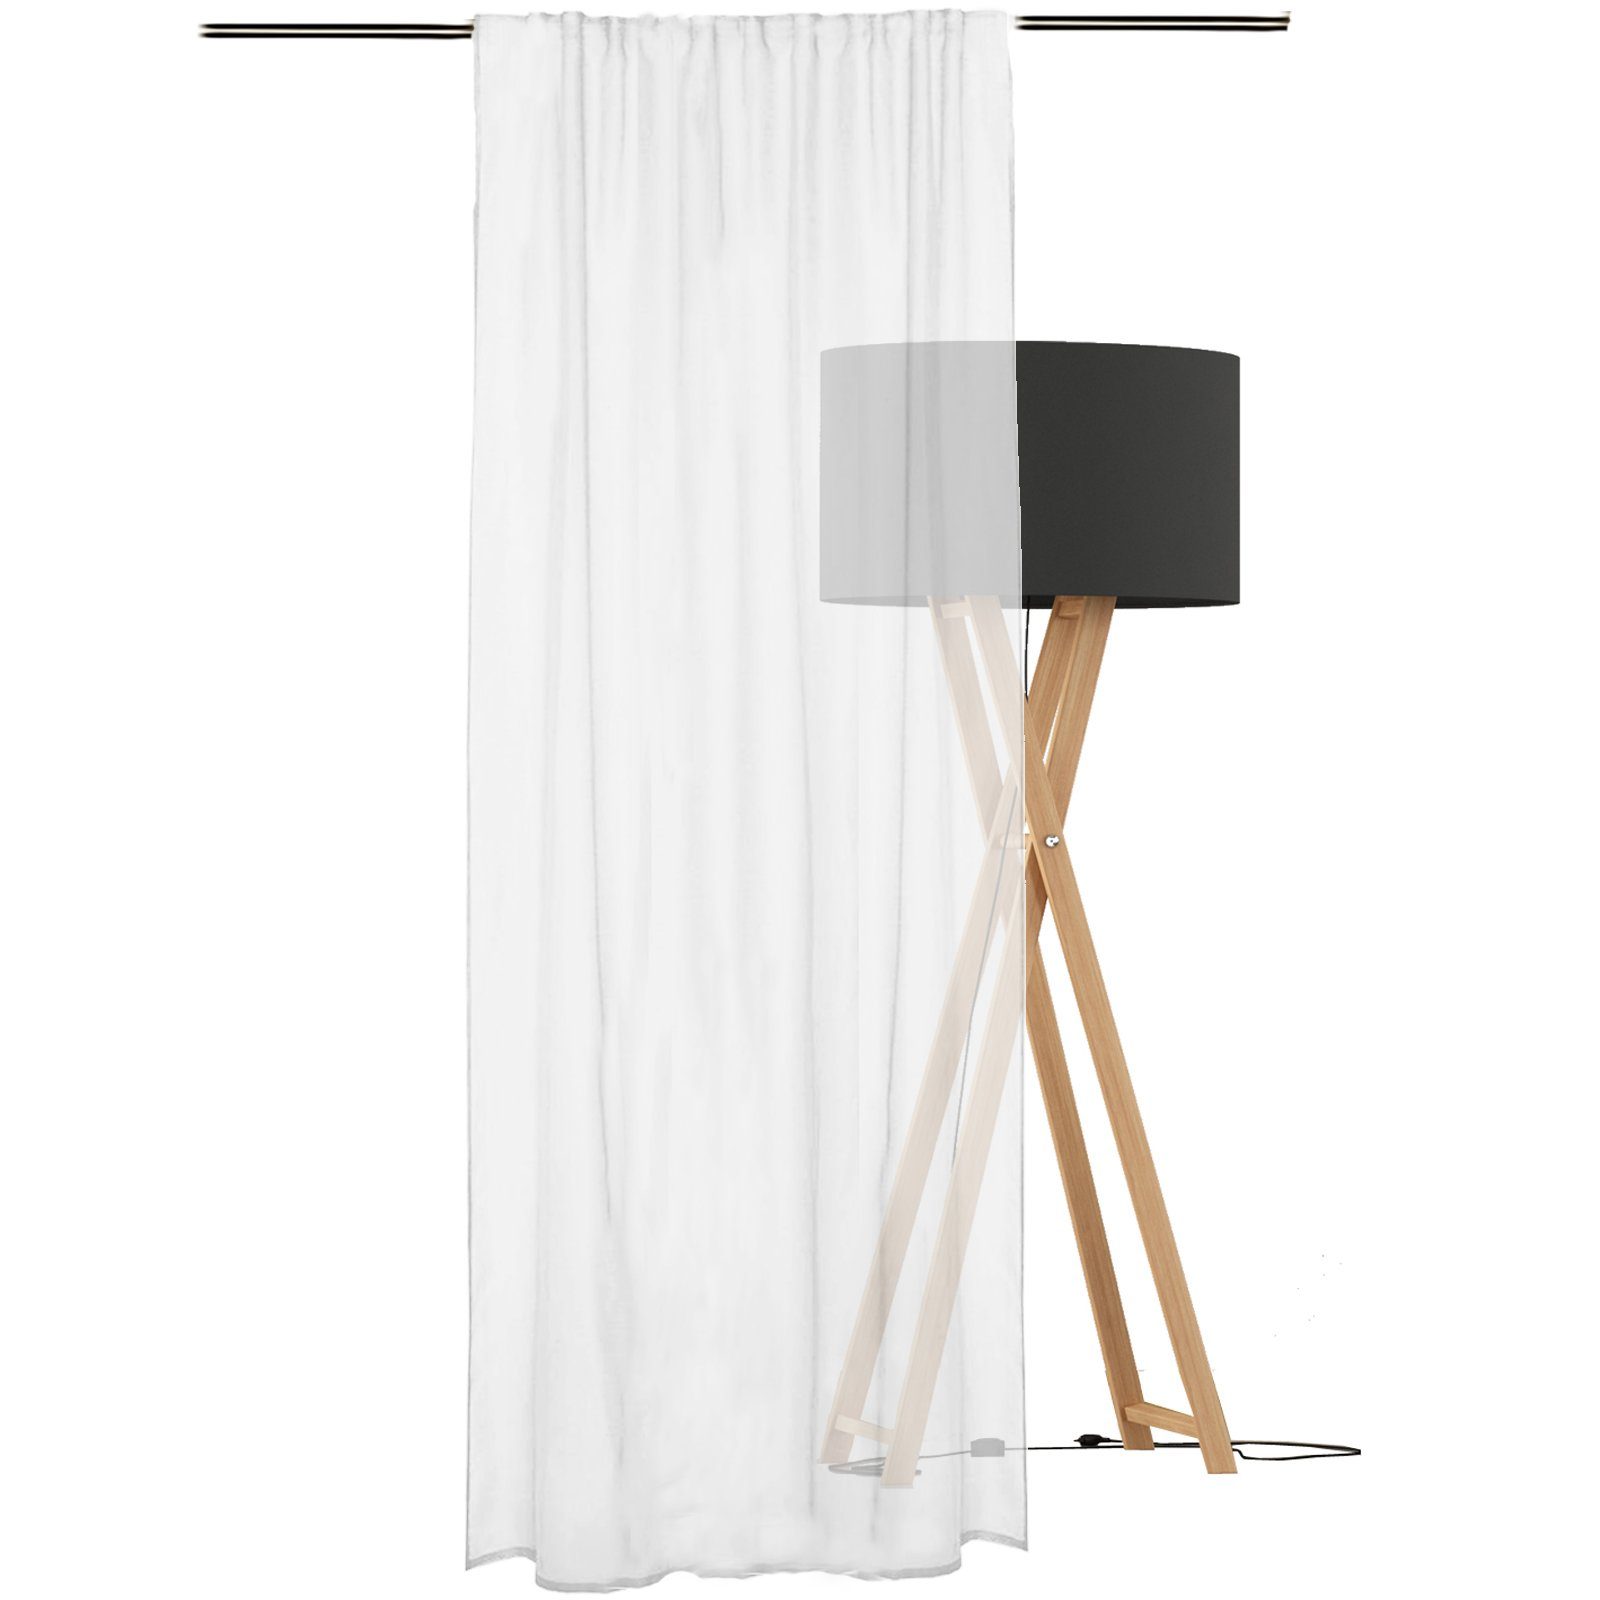 Vorhang Vorhang JEMIDI Schlaufenschal Polyester 140x245cm transparent weiß, - 100% 